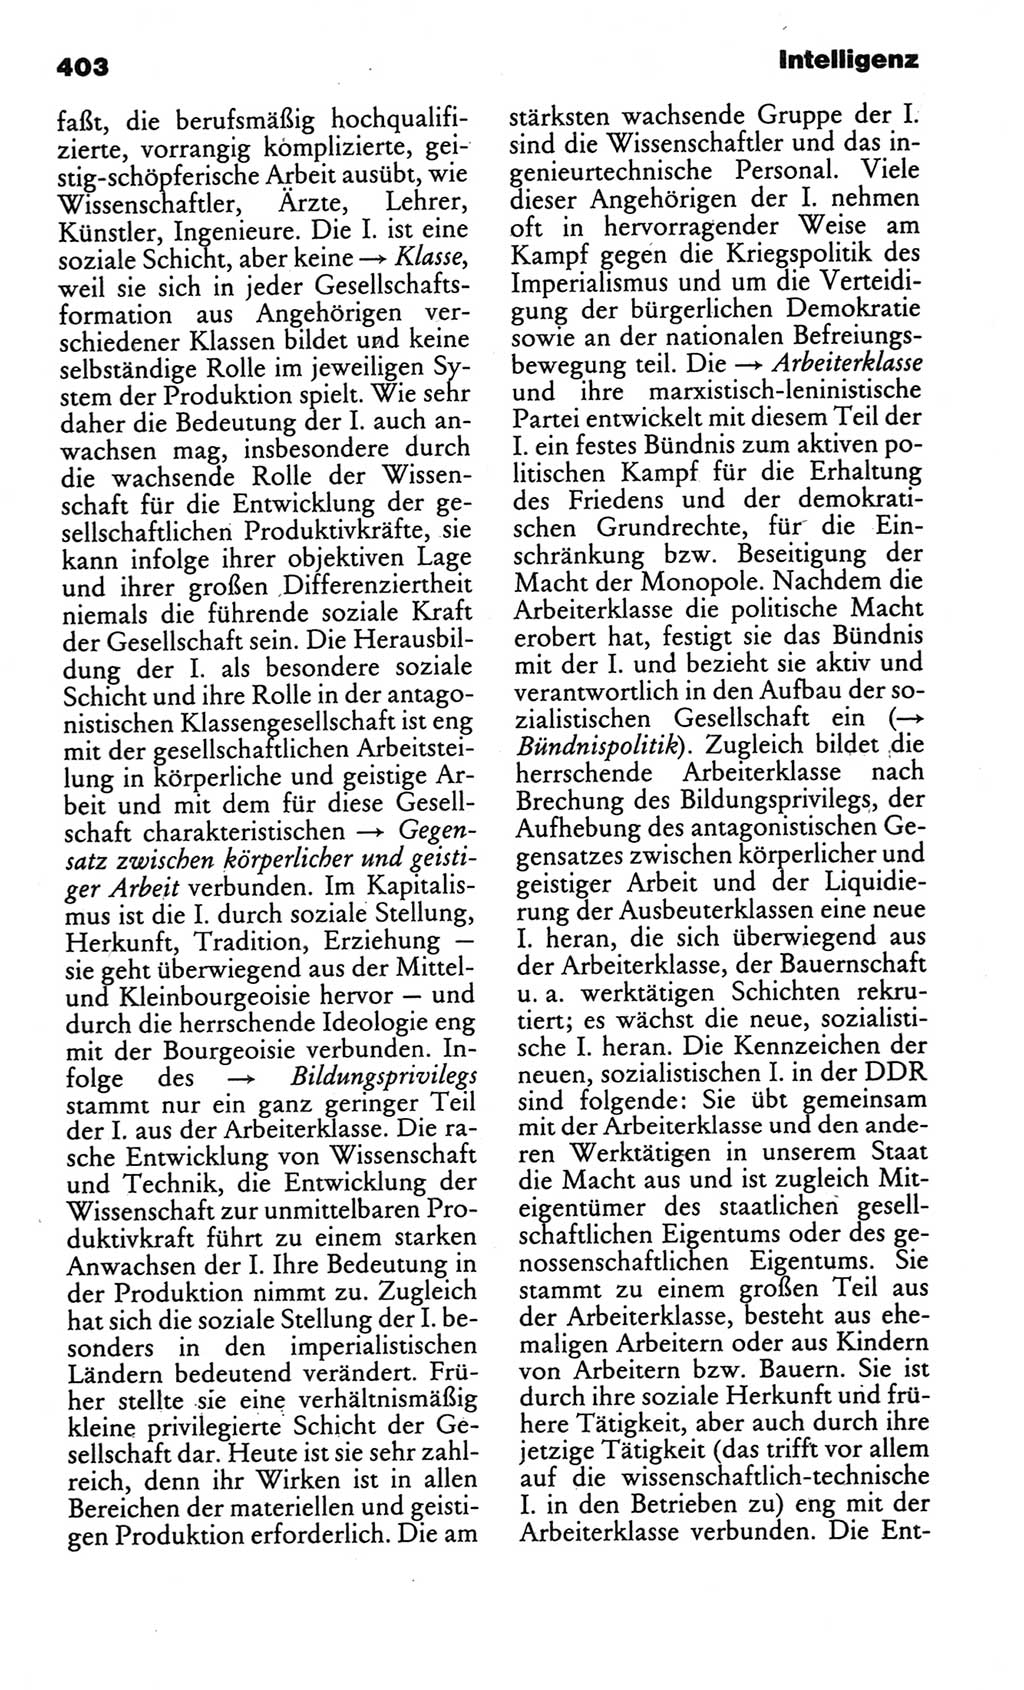 Kleines politisches Wörterbuch [Deutsche Demokratische Republik (DDR)] 1986, Seite 403 (Kl. pol. Wb. DDR 1986, S. 403)